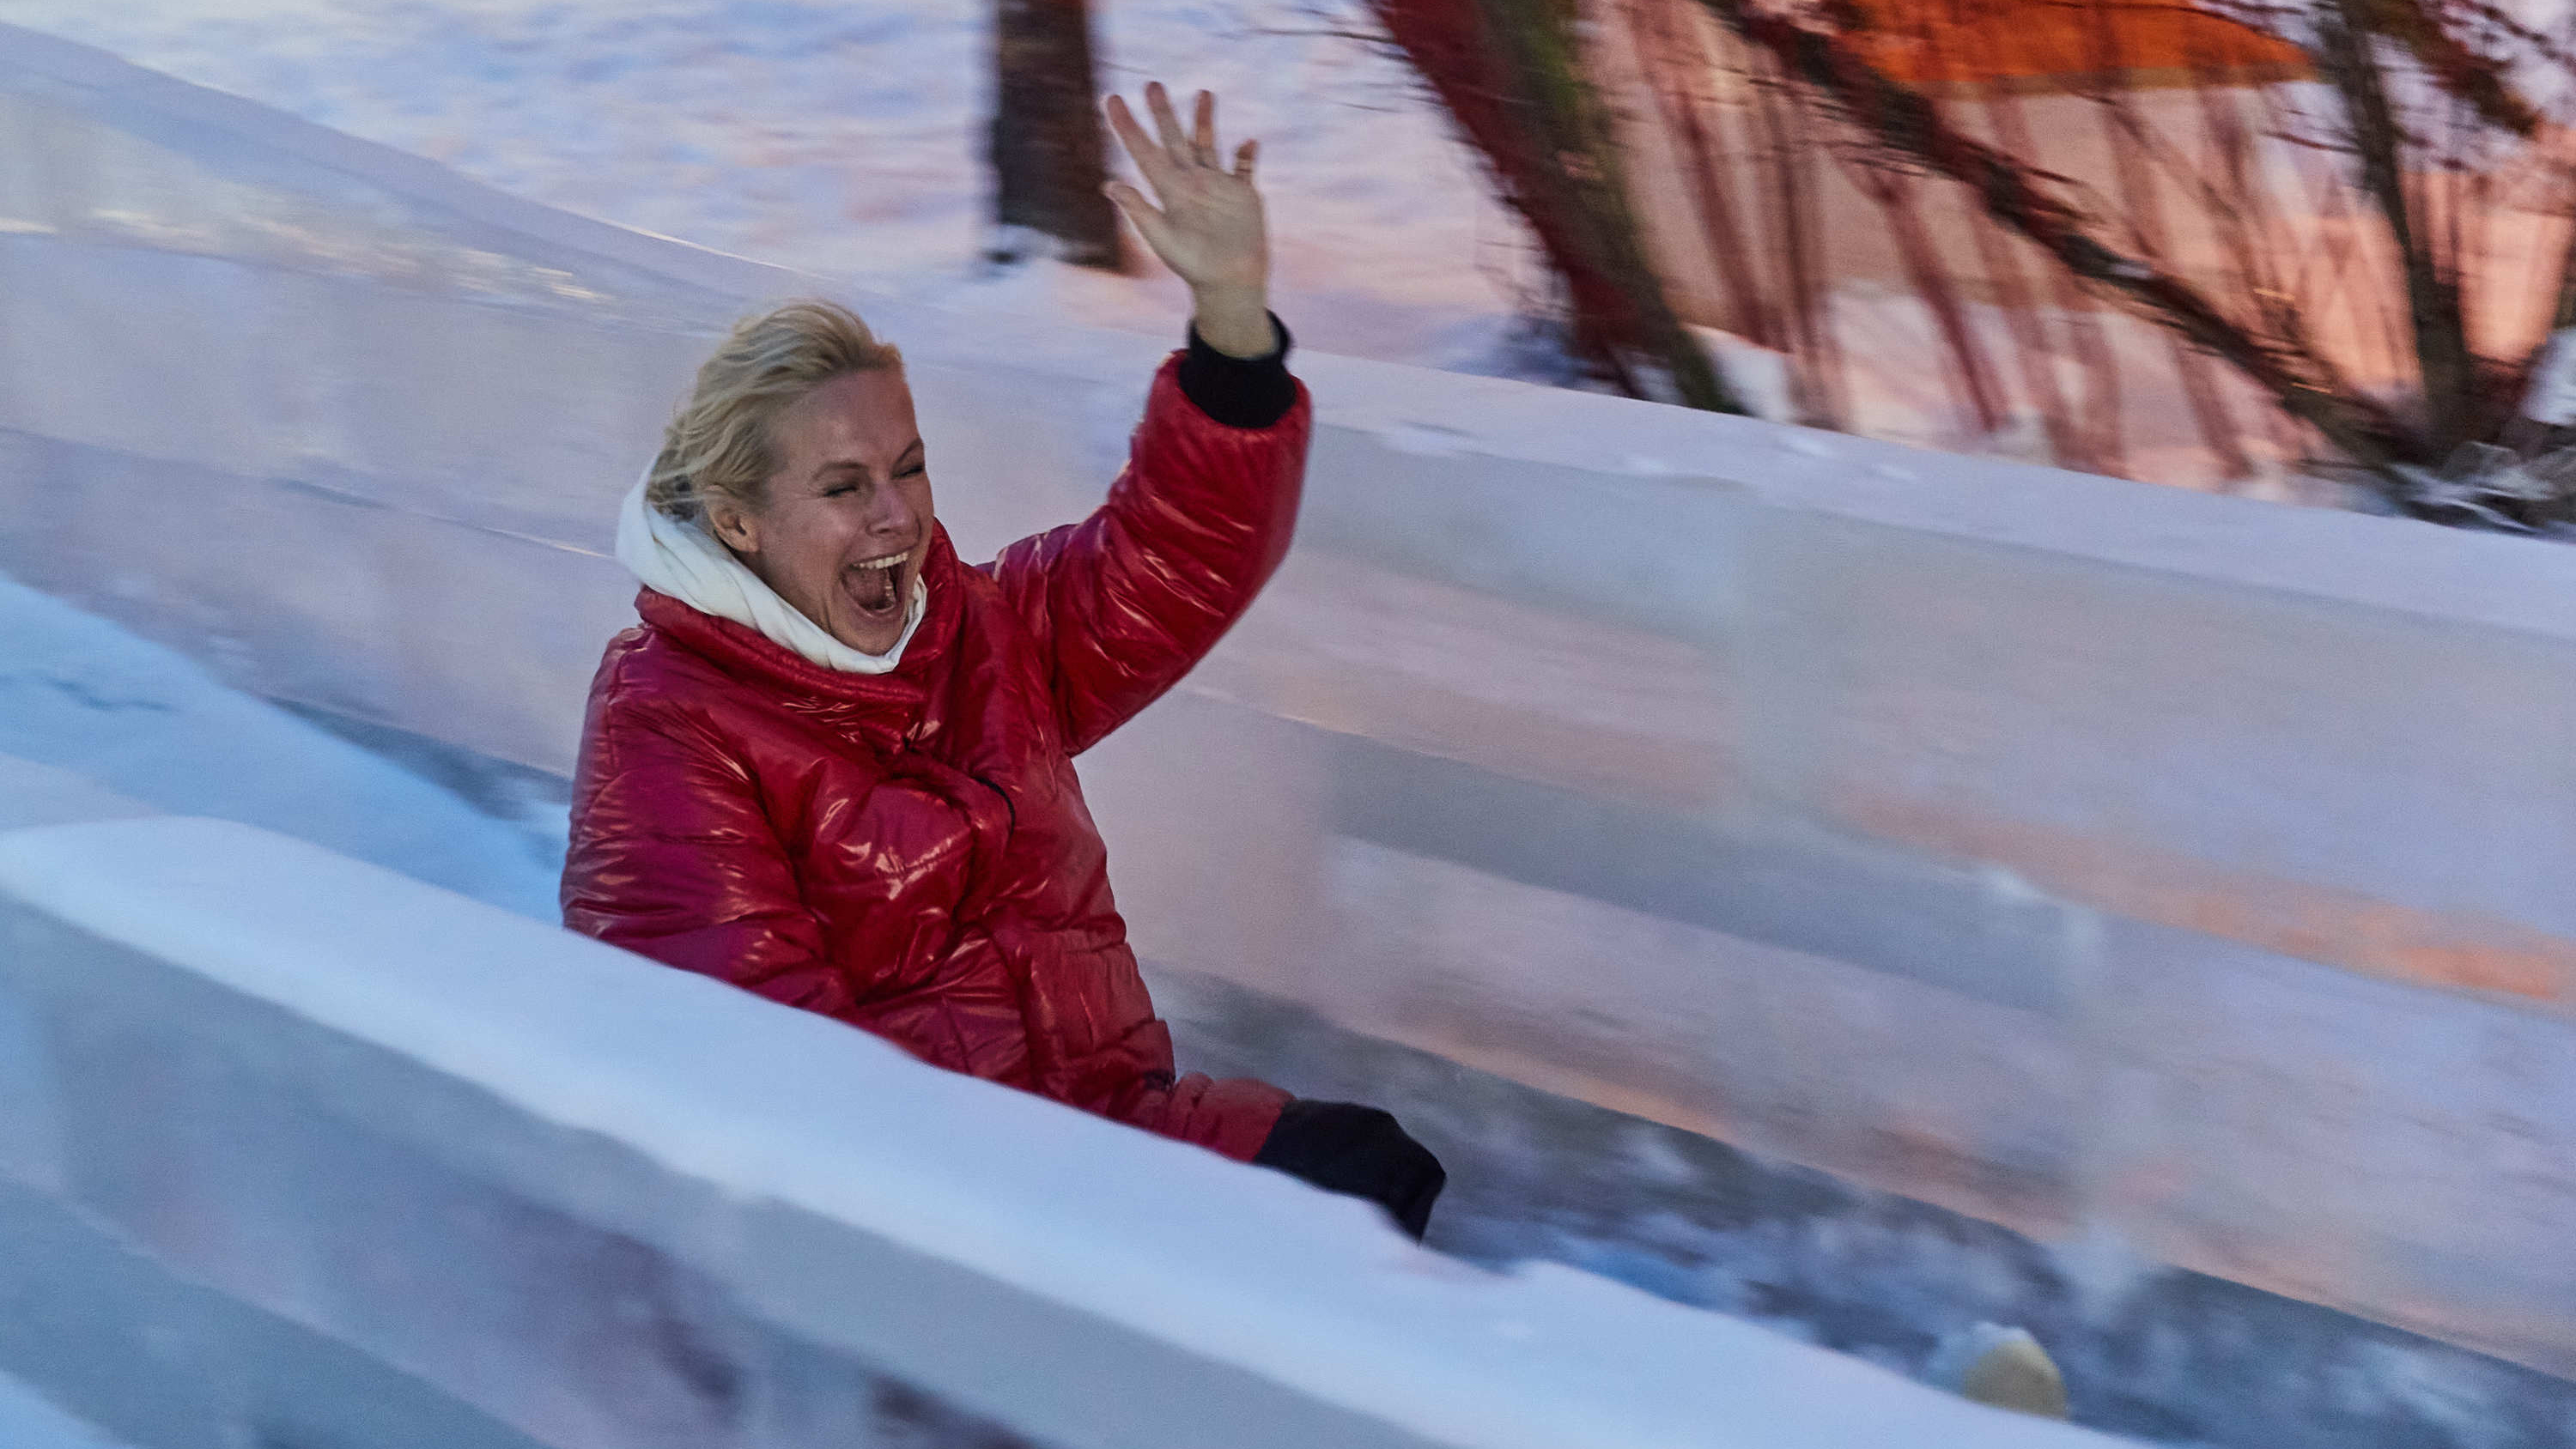 Анна Терешкова скатилась с горки на Михайловской набережной. Фото и видео с открытия ледового городка возле Оби